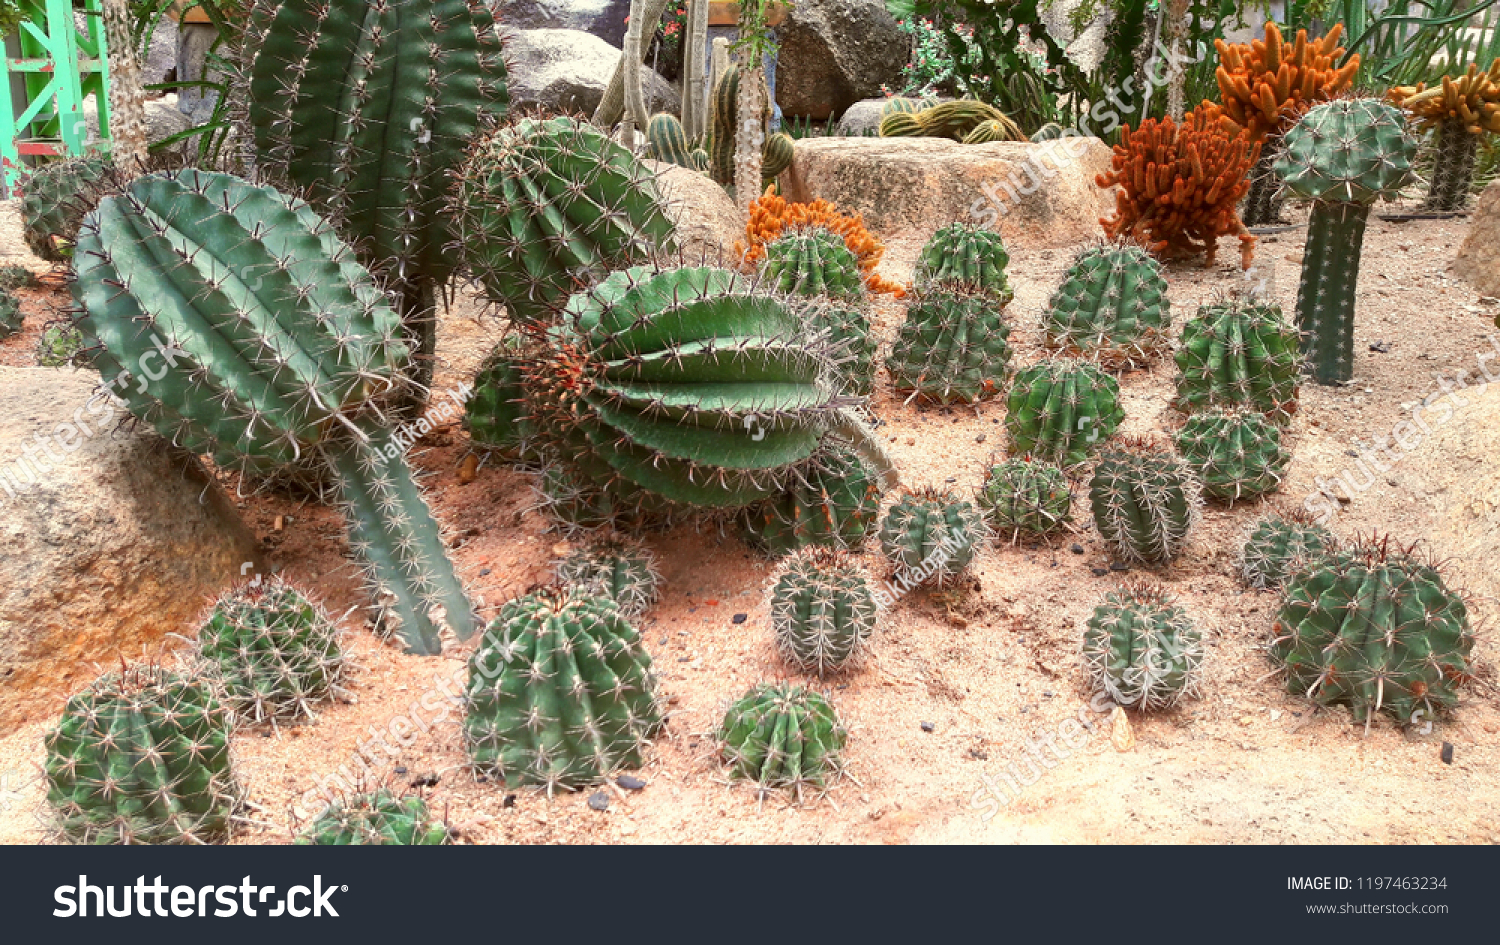 Cactus, Cactus thorns, Close up thorns of cactus, Cactus Background #1197463234